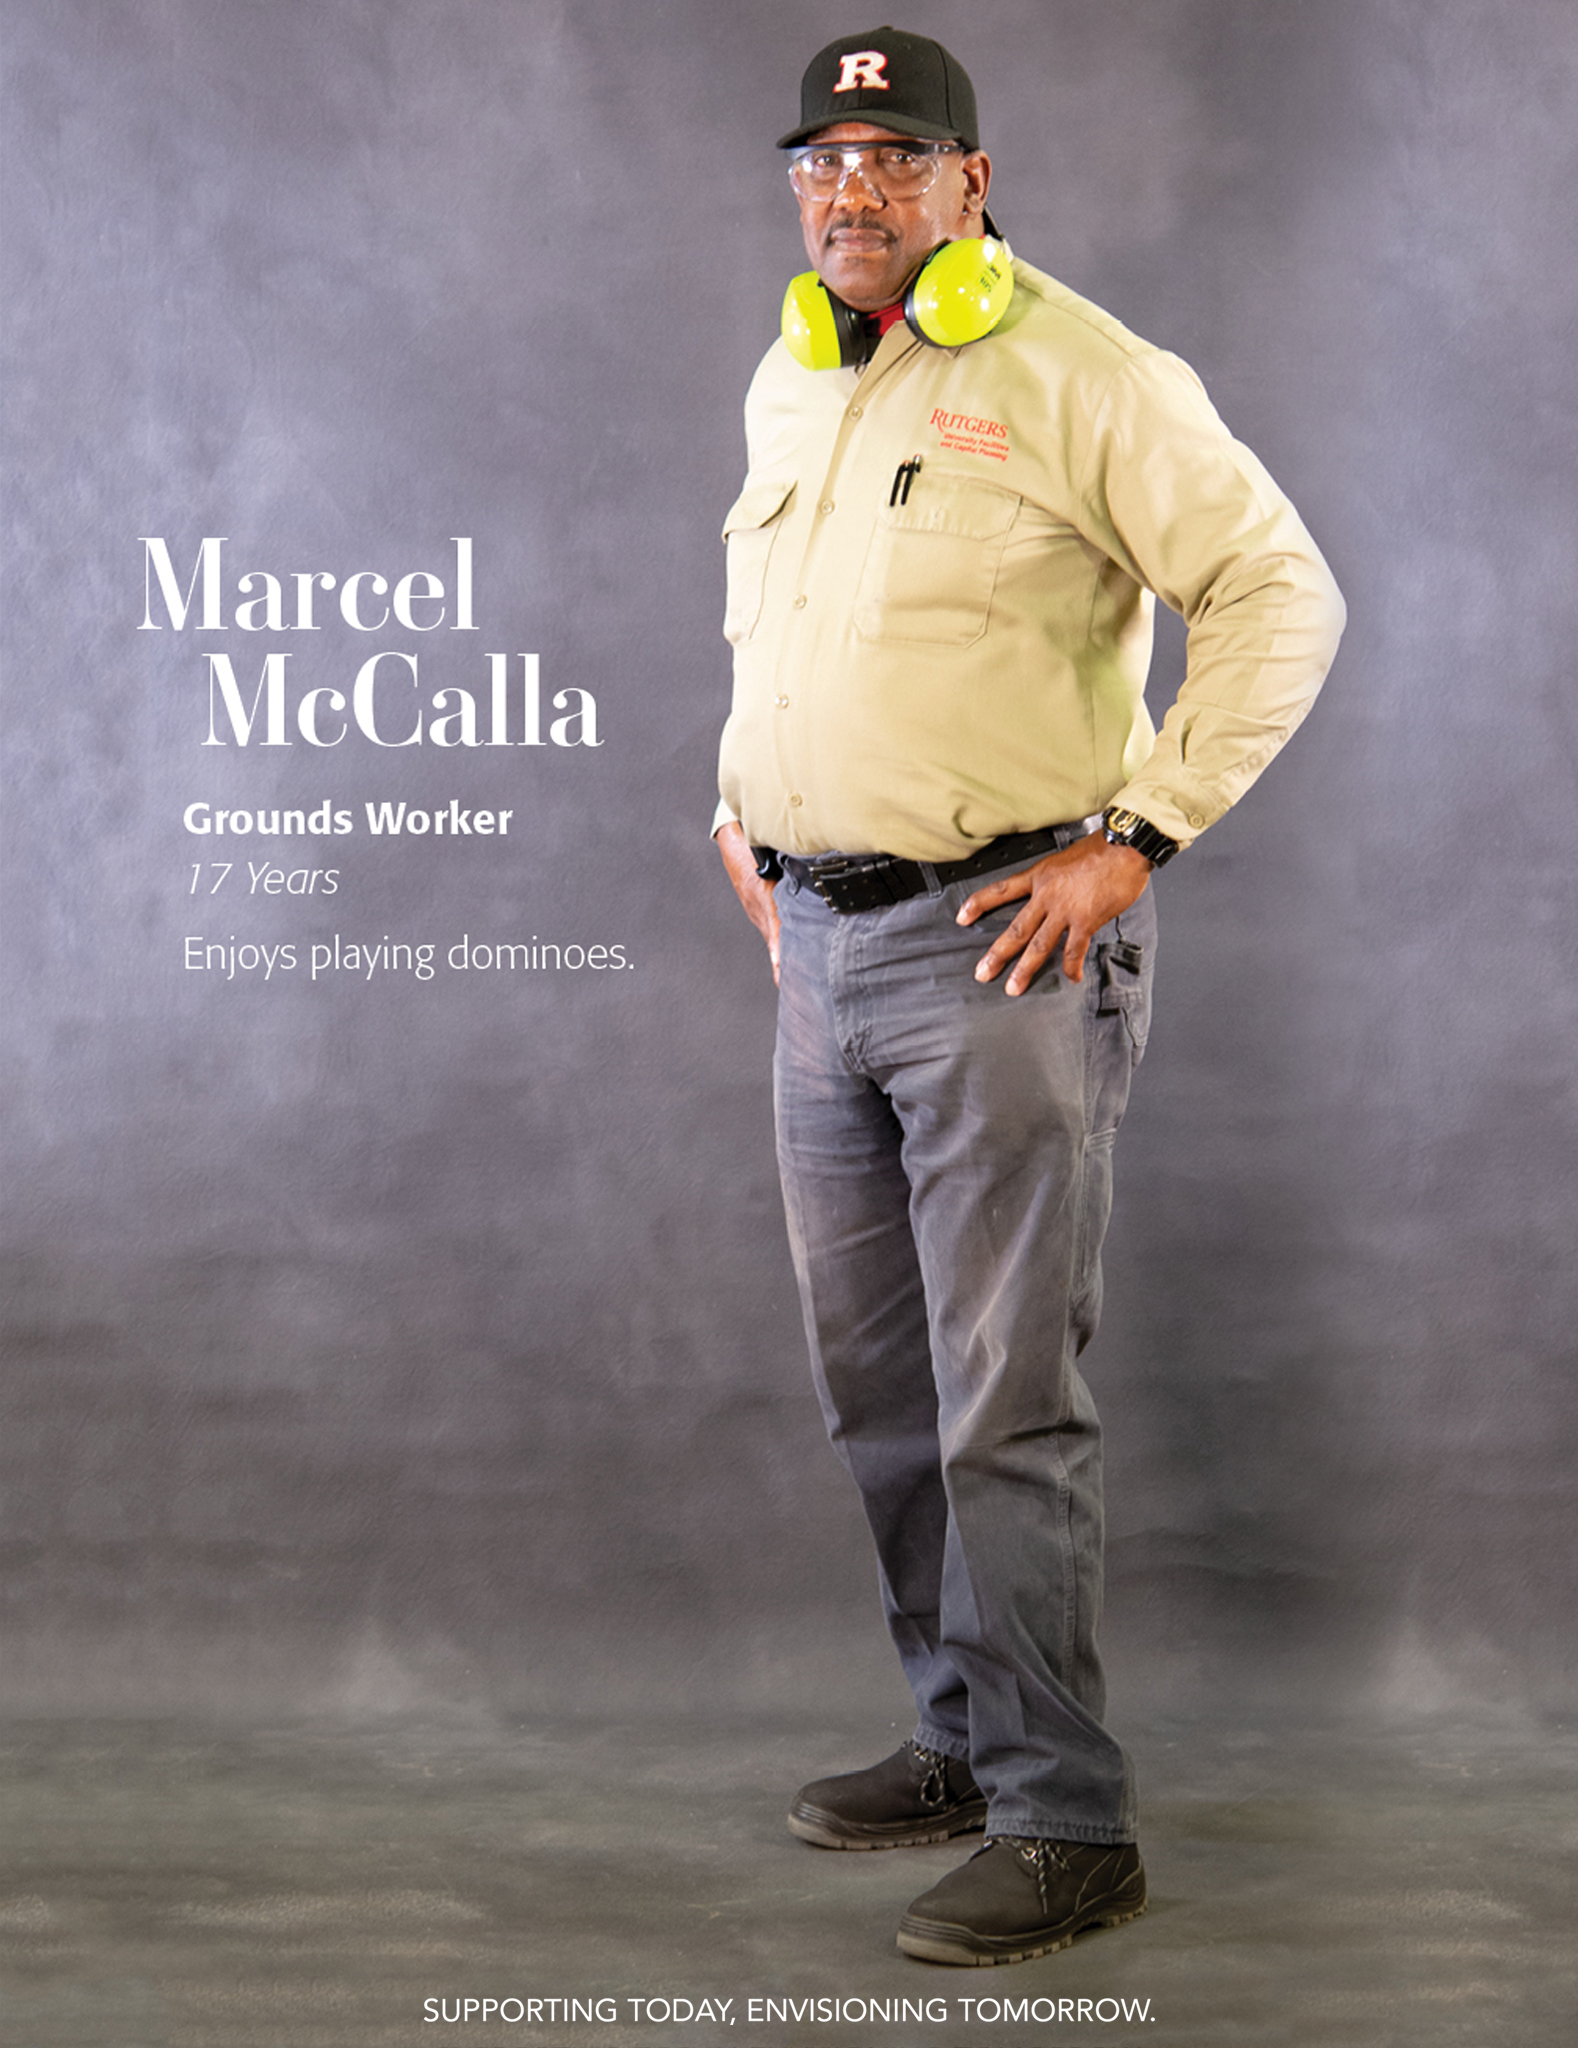 Marcel McCalla